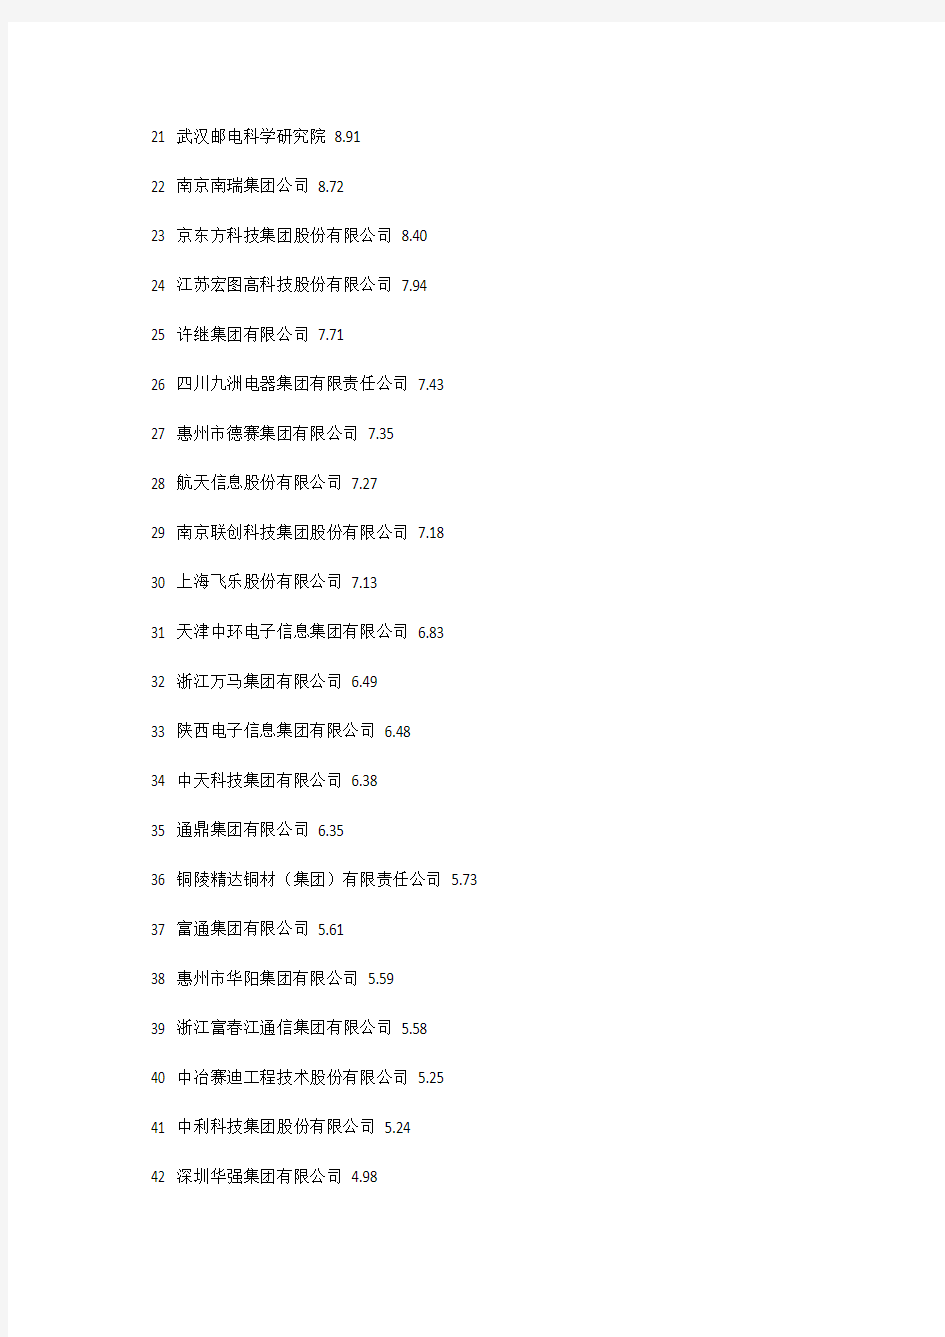 2012年中国电子信息行业百强企业名单